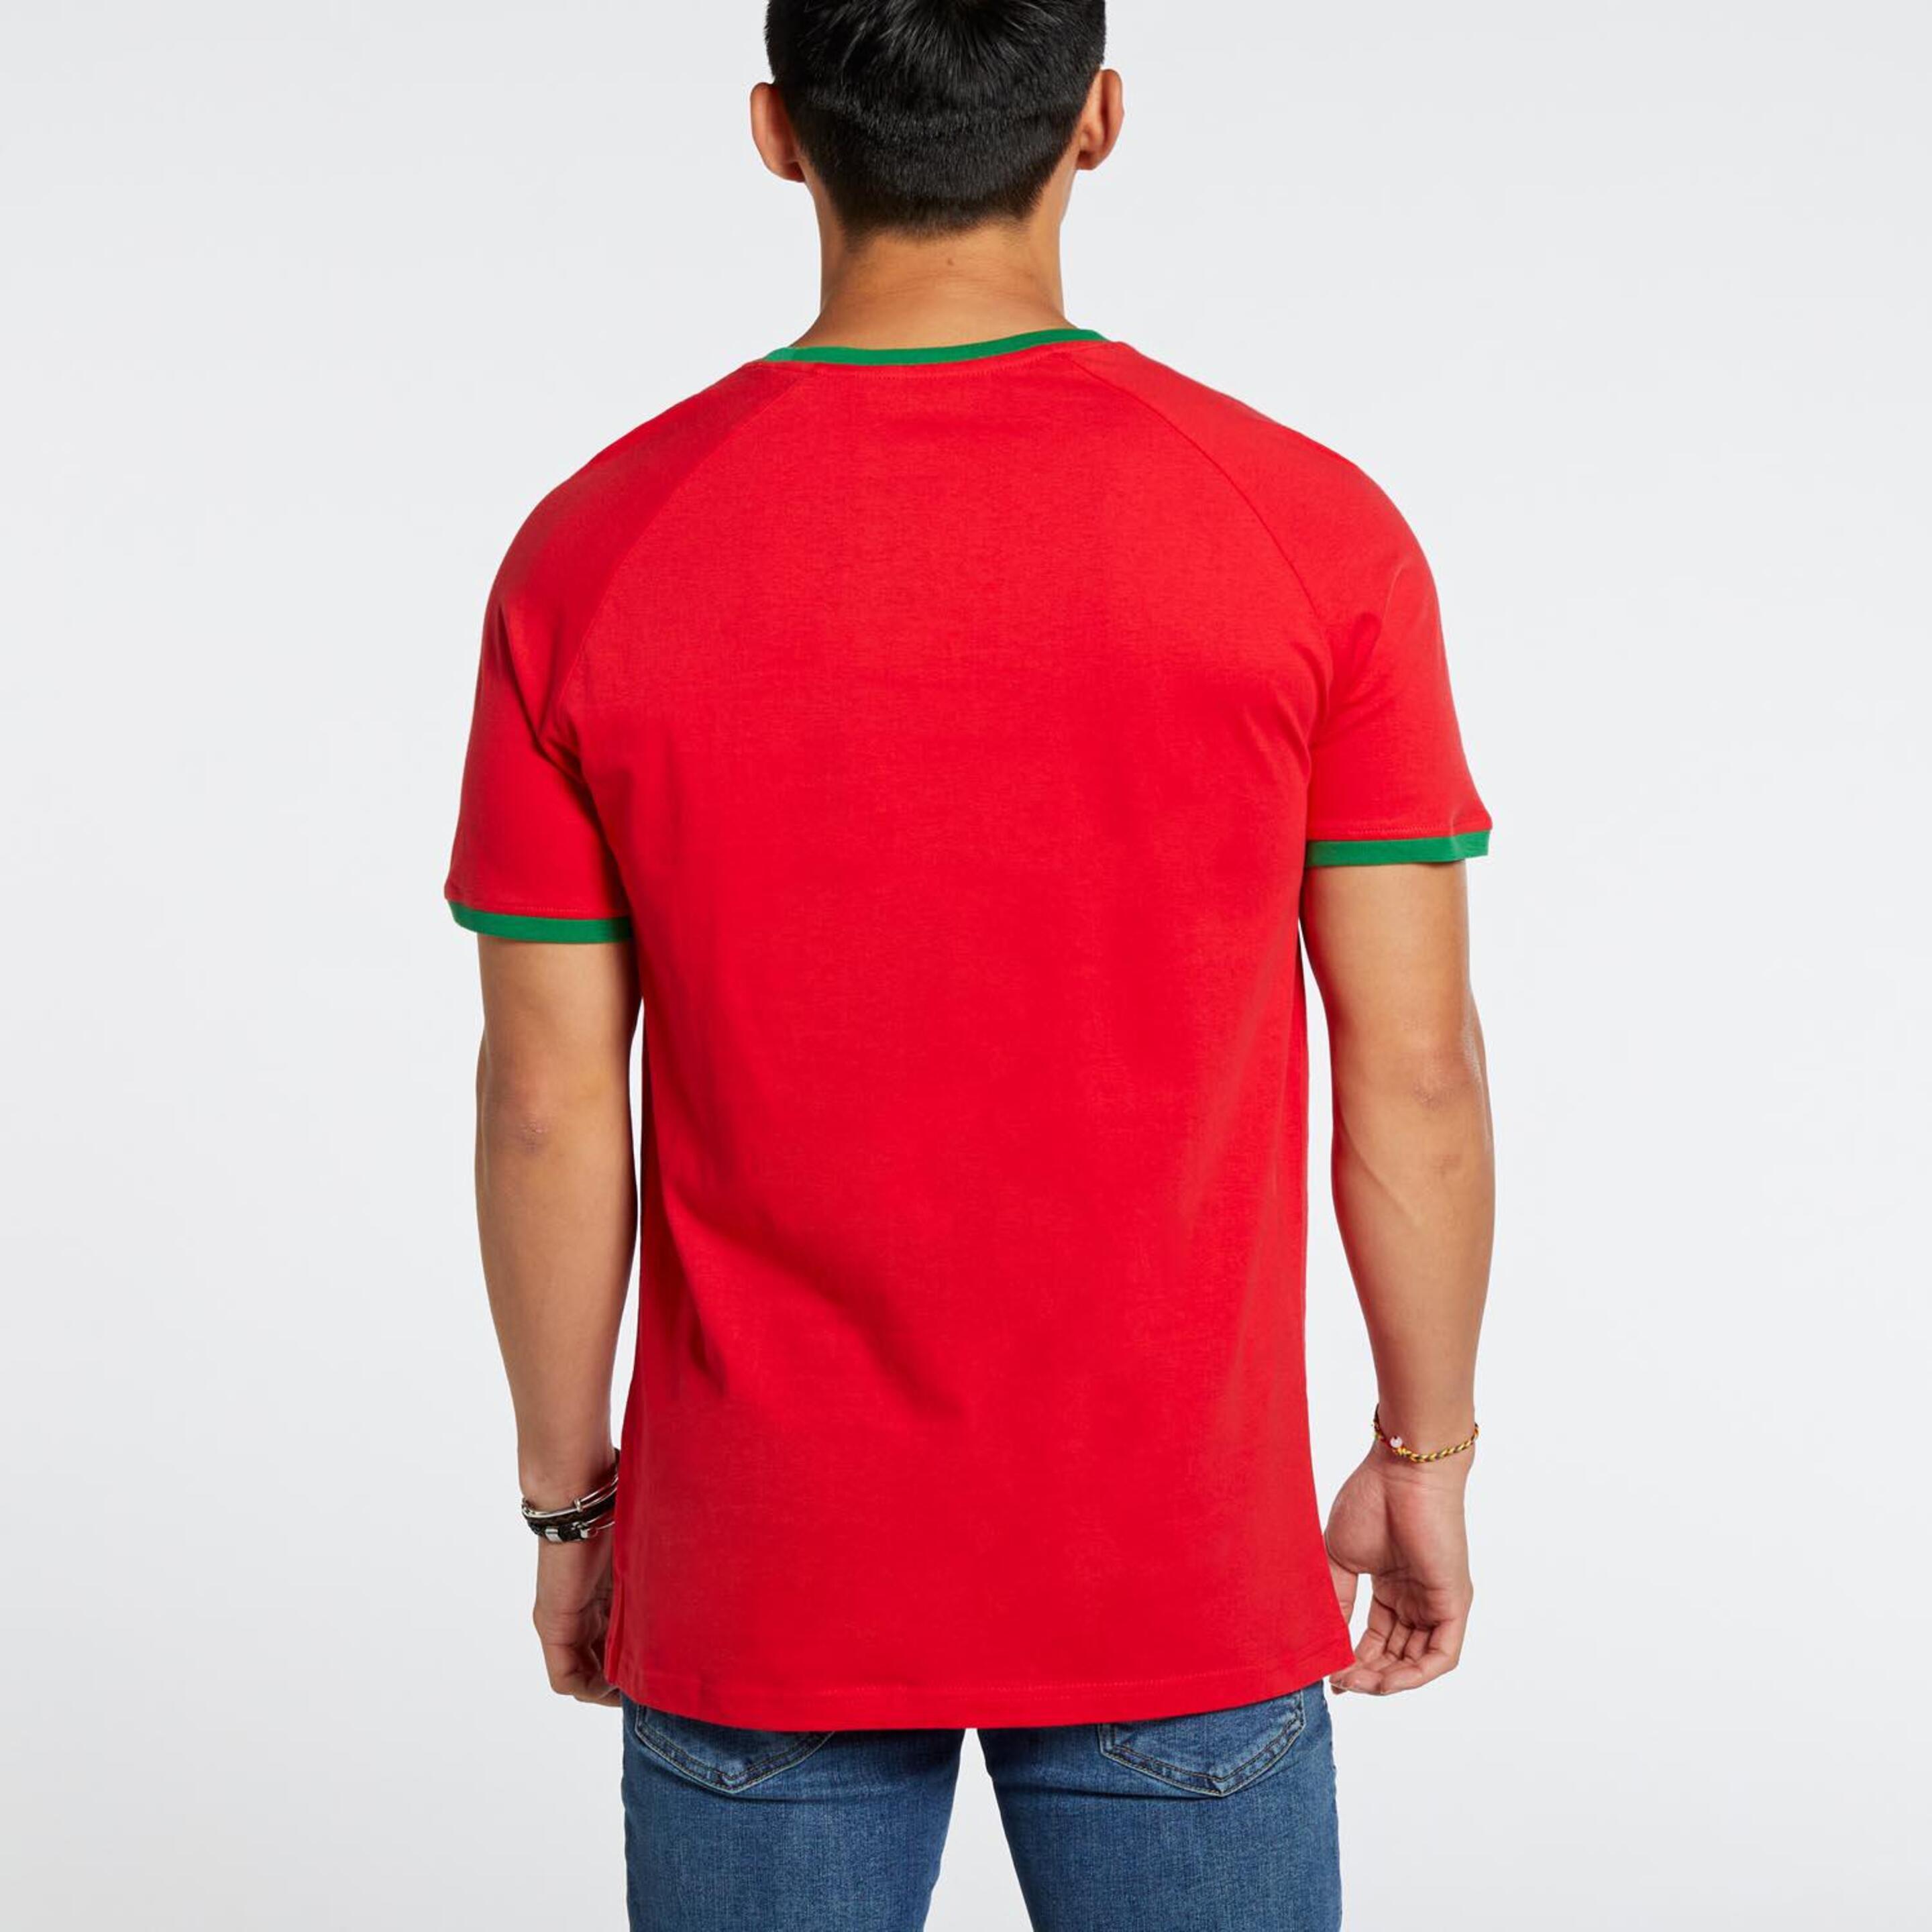 Camiseta Portugal Team Quest